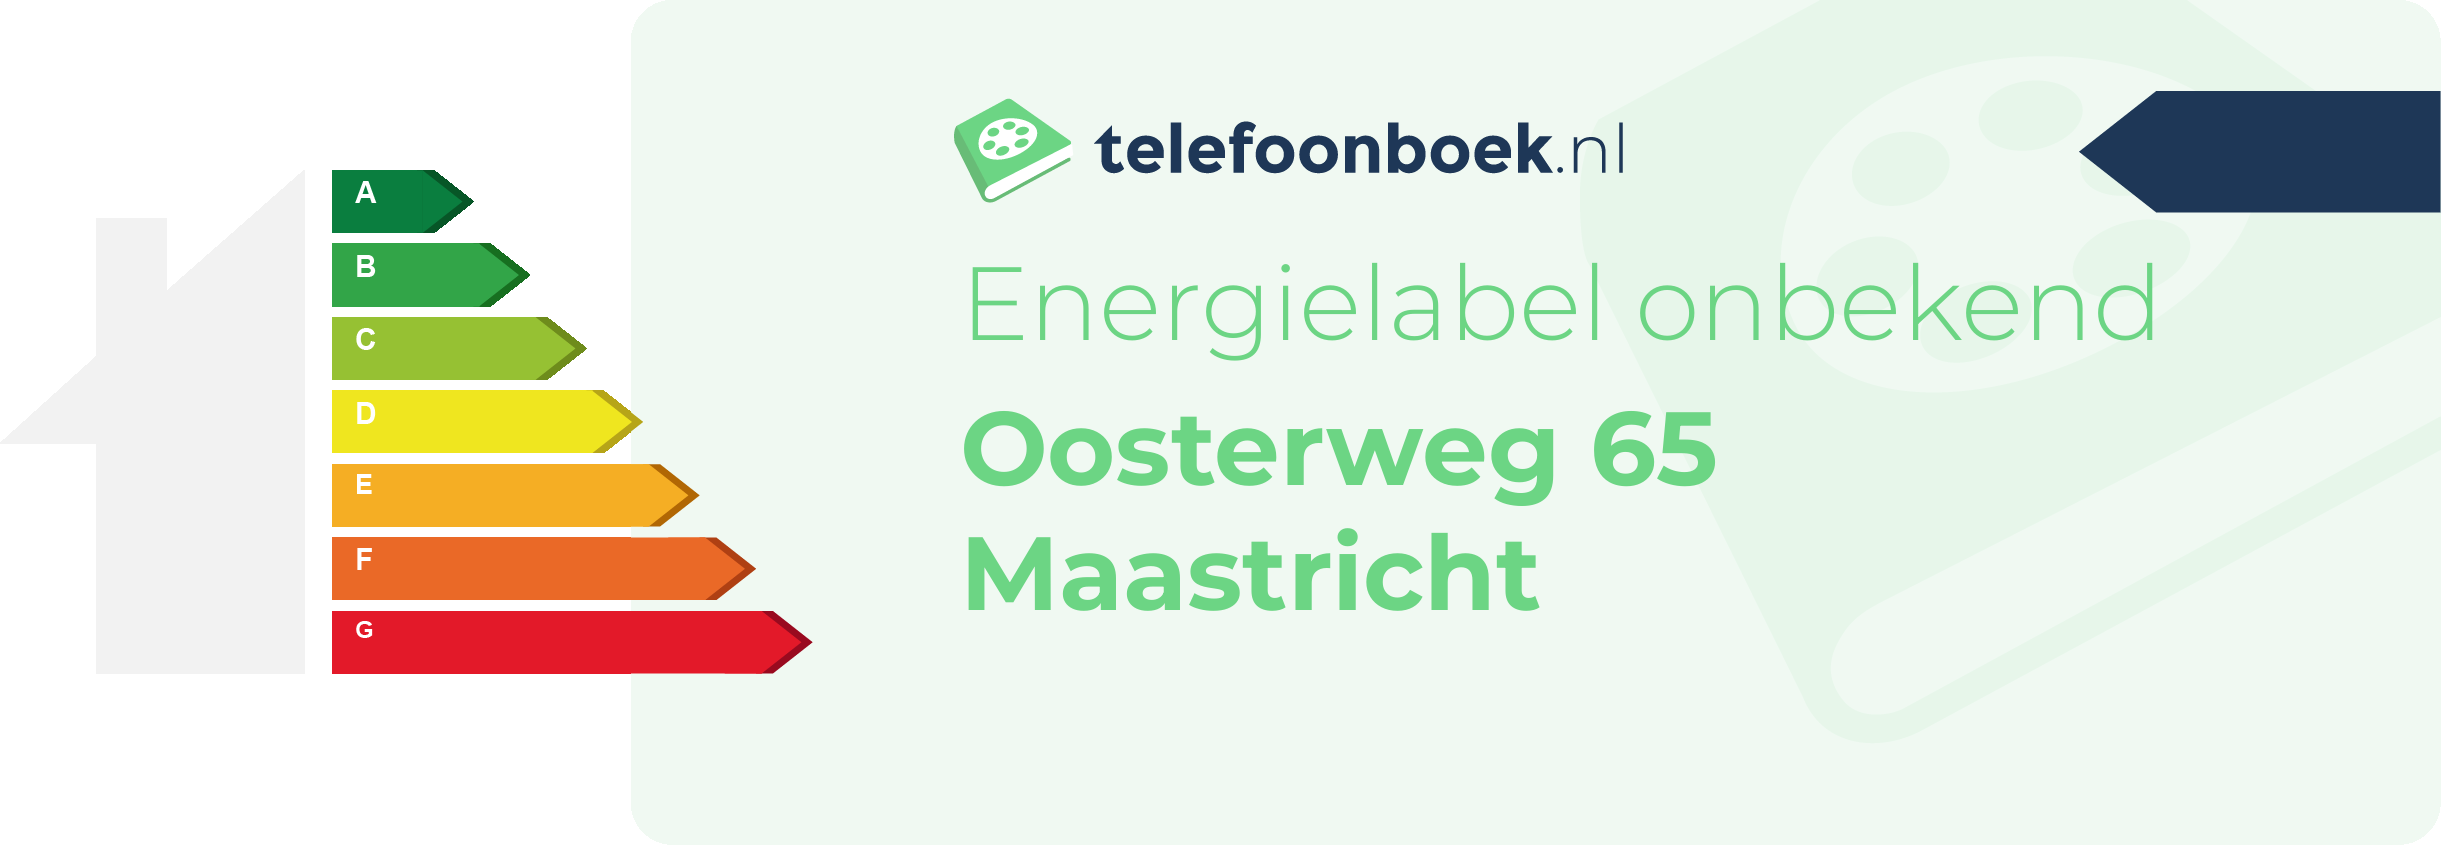 Energielabel Oosterweg 65 Maastricht